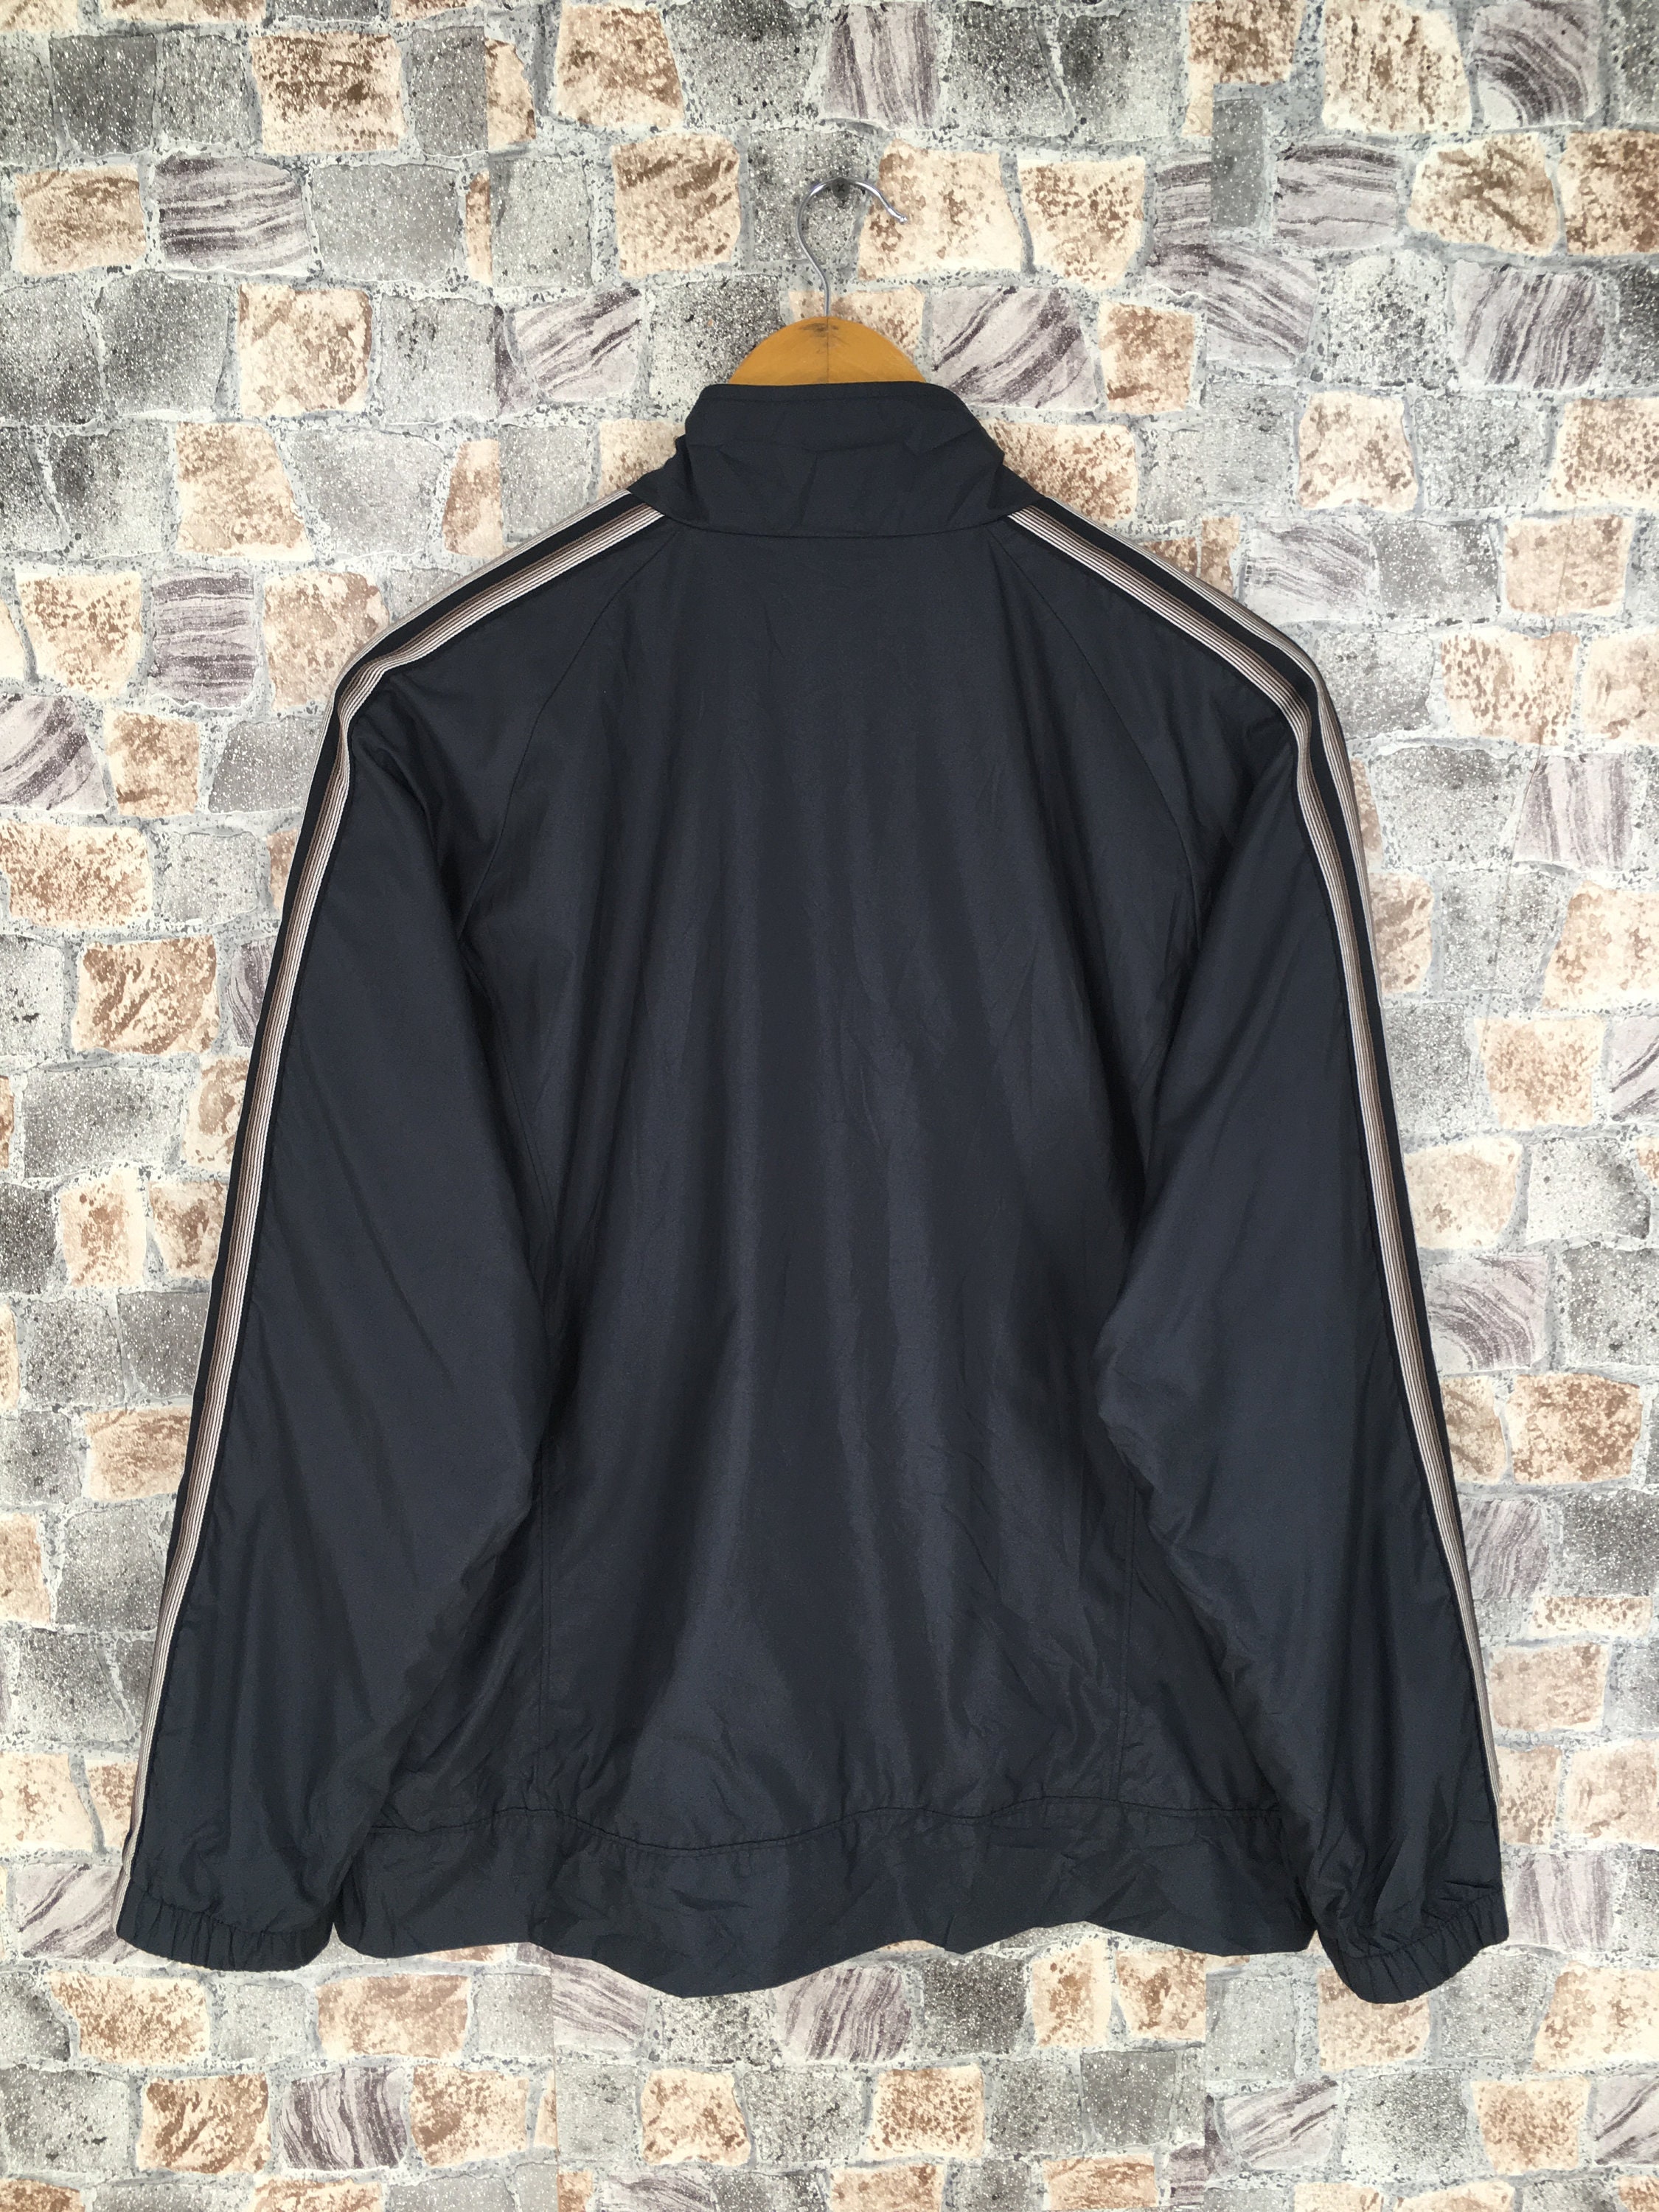 Adidas Windbreaker Jacket Medium Vintage 90's Adidas | Etsy